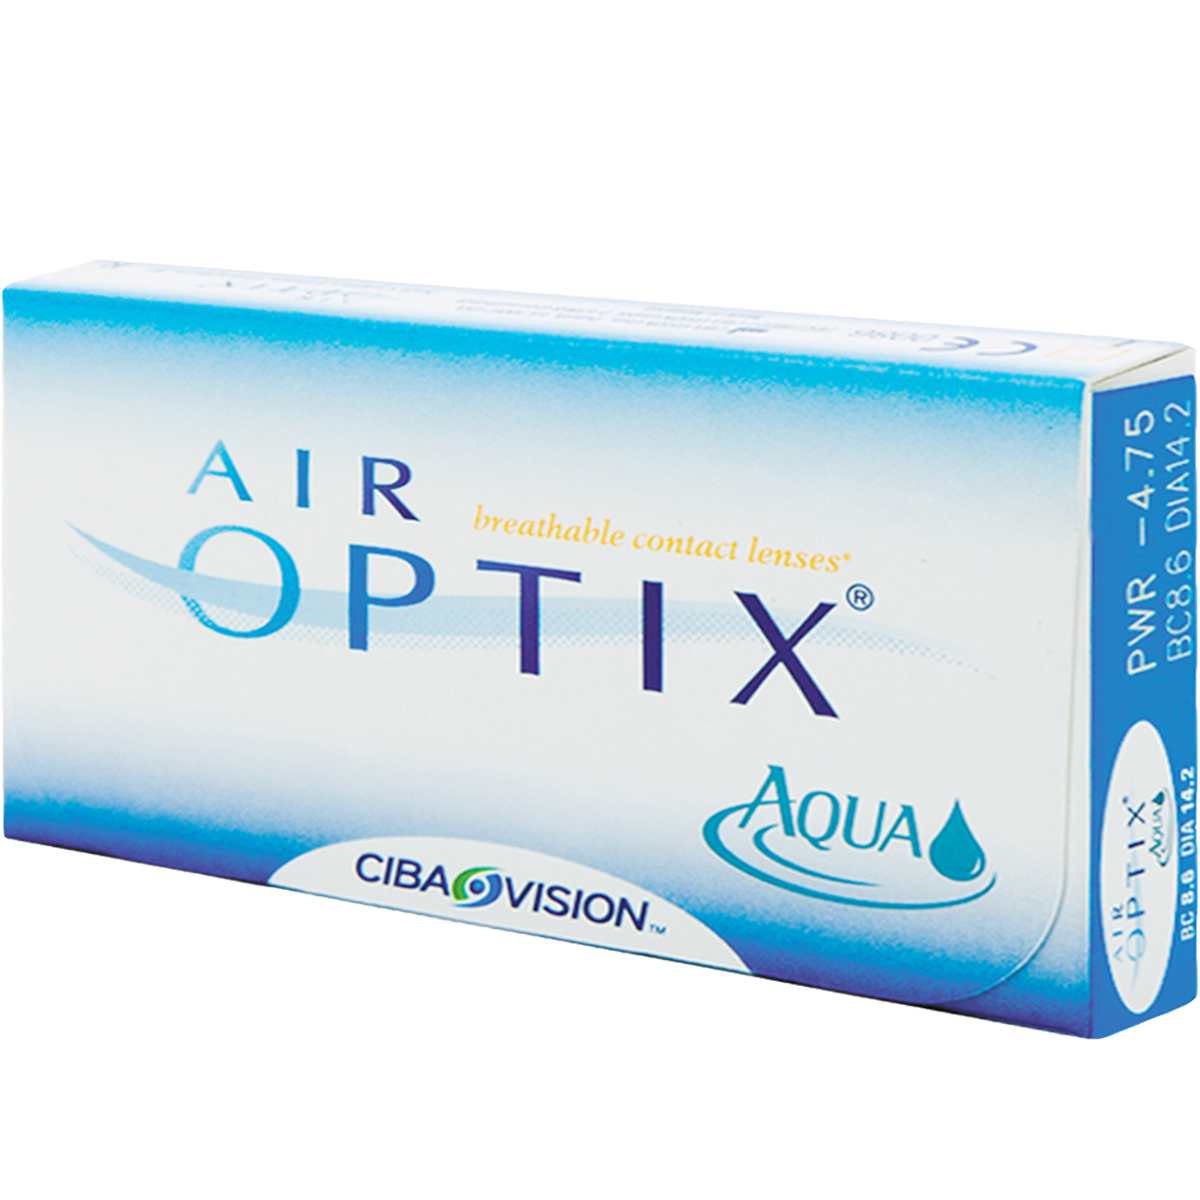 air-optix-aqua-air-optix-plus-hydraglyde